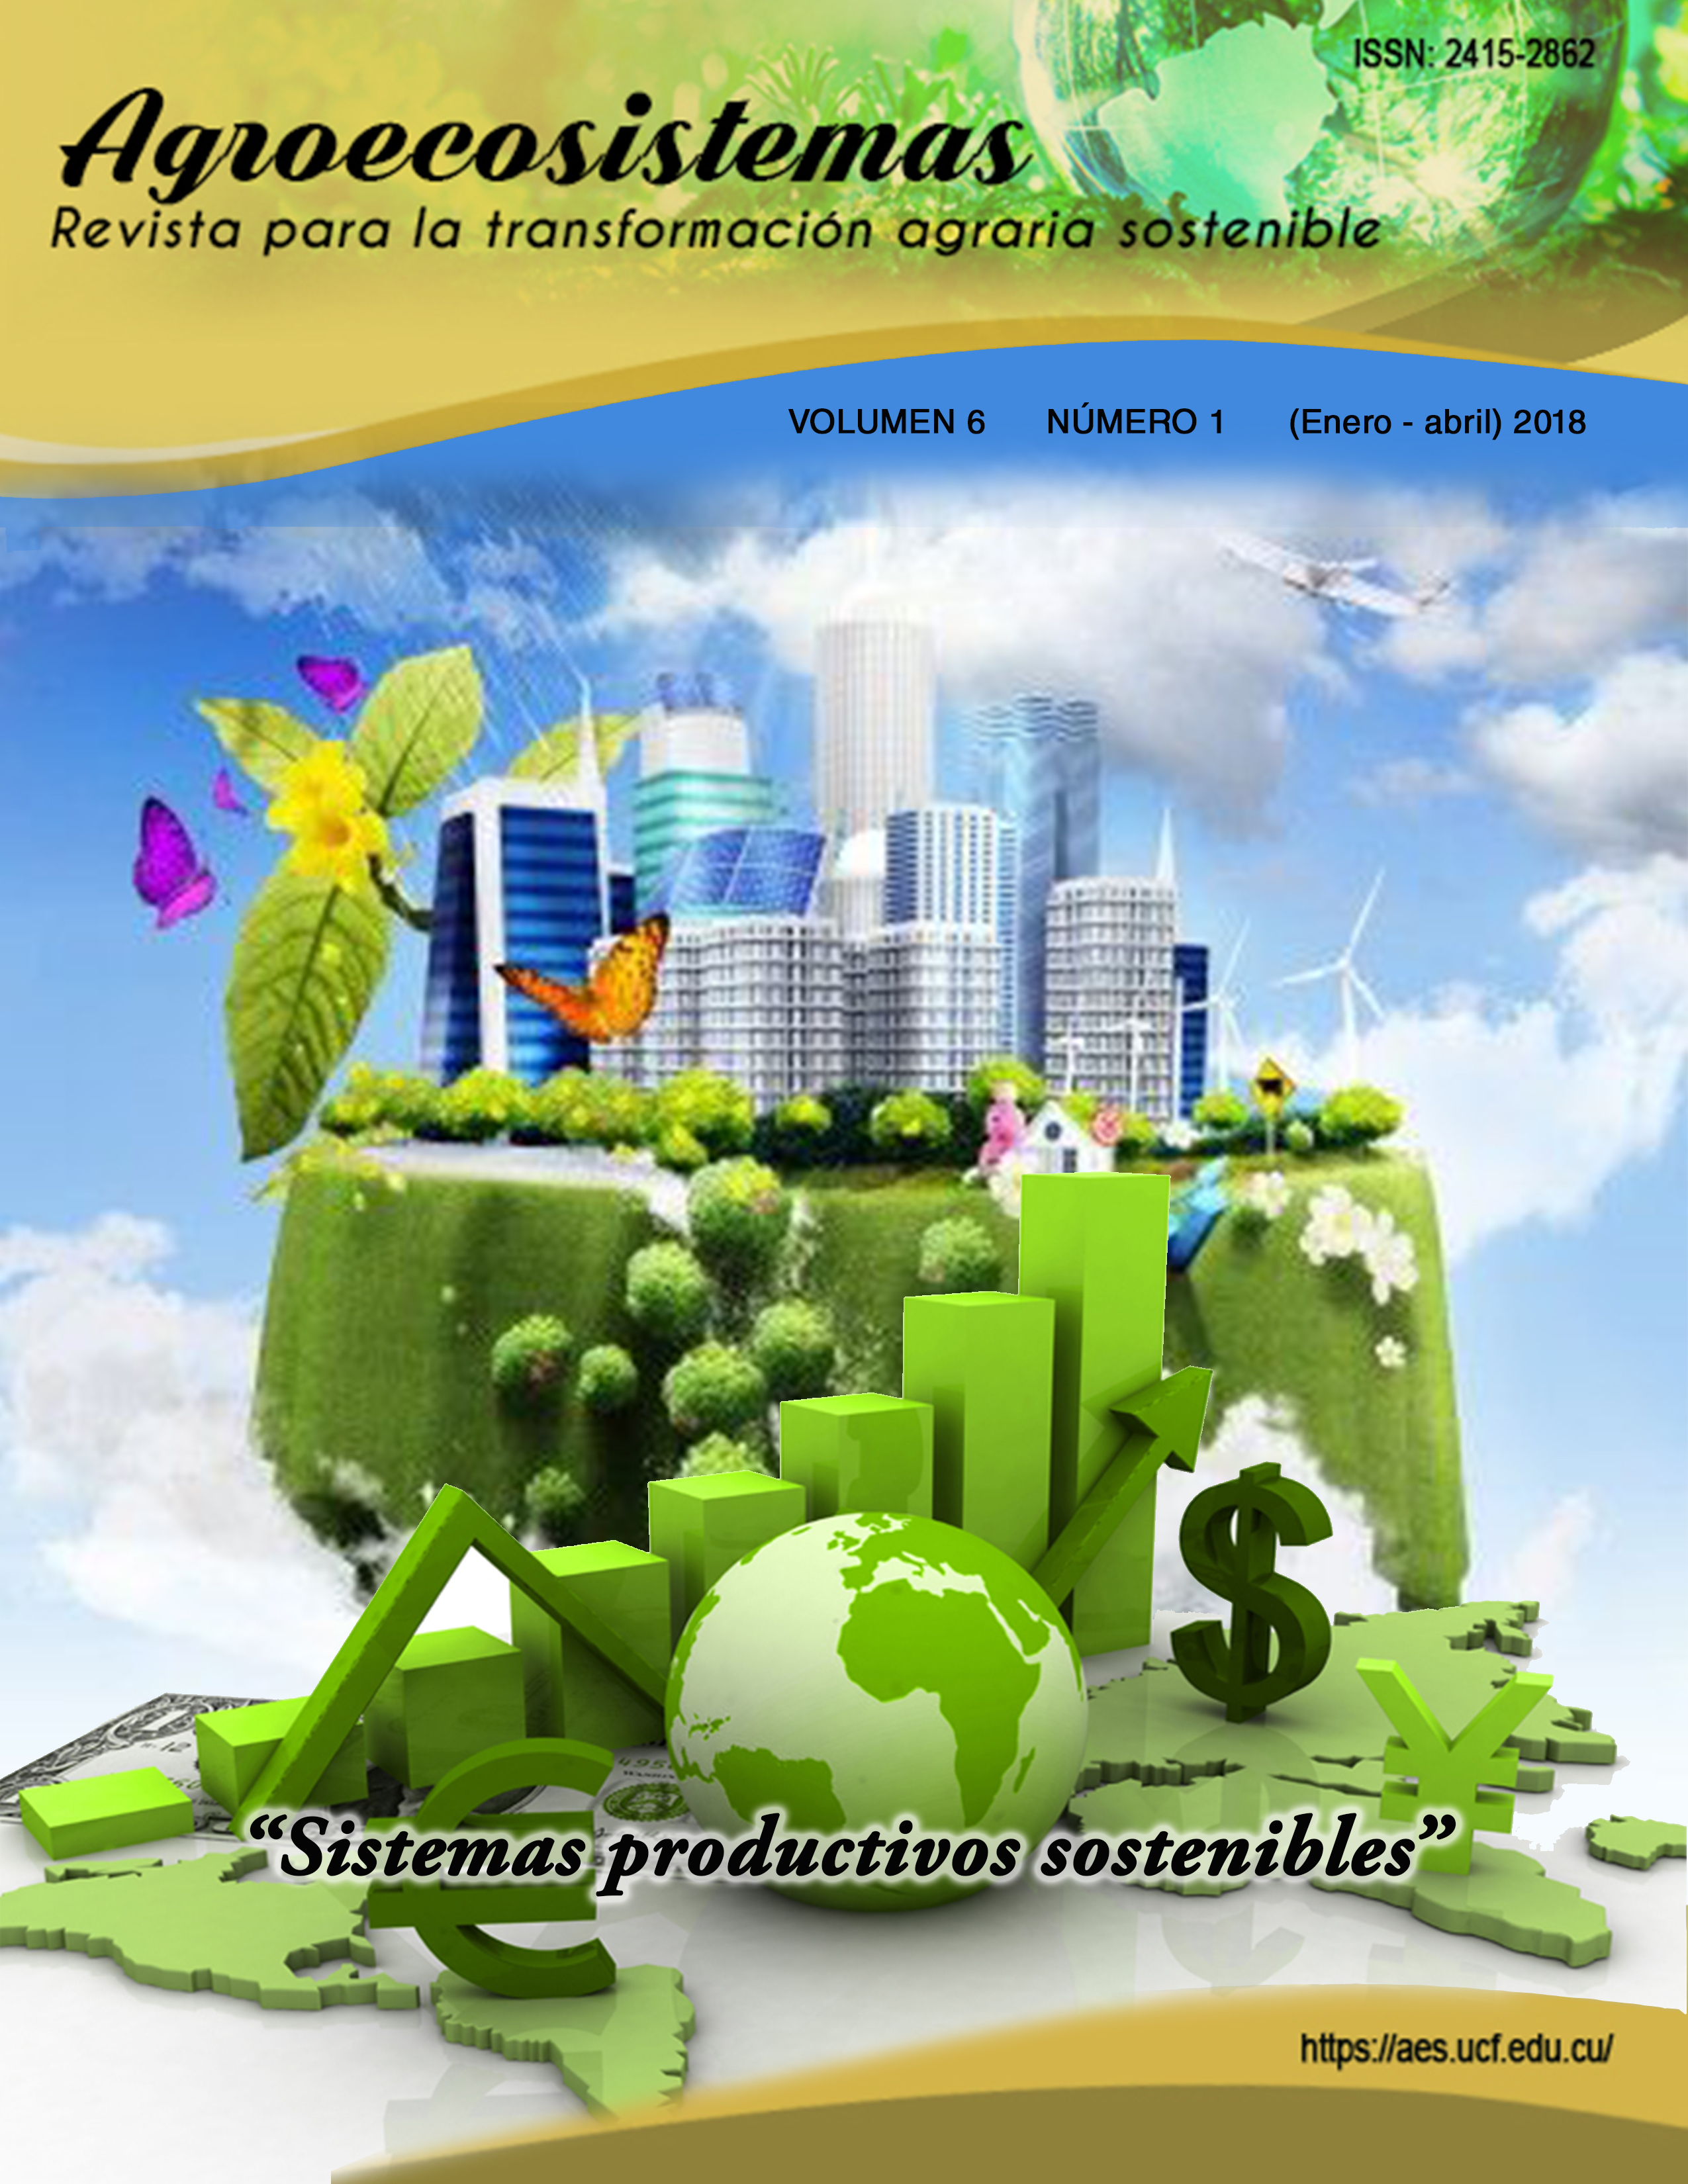 					View Vol. 6 No. 1 (2018): Sistemas productivos sostenibles (enero-abril)
				